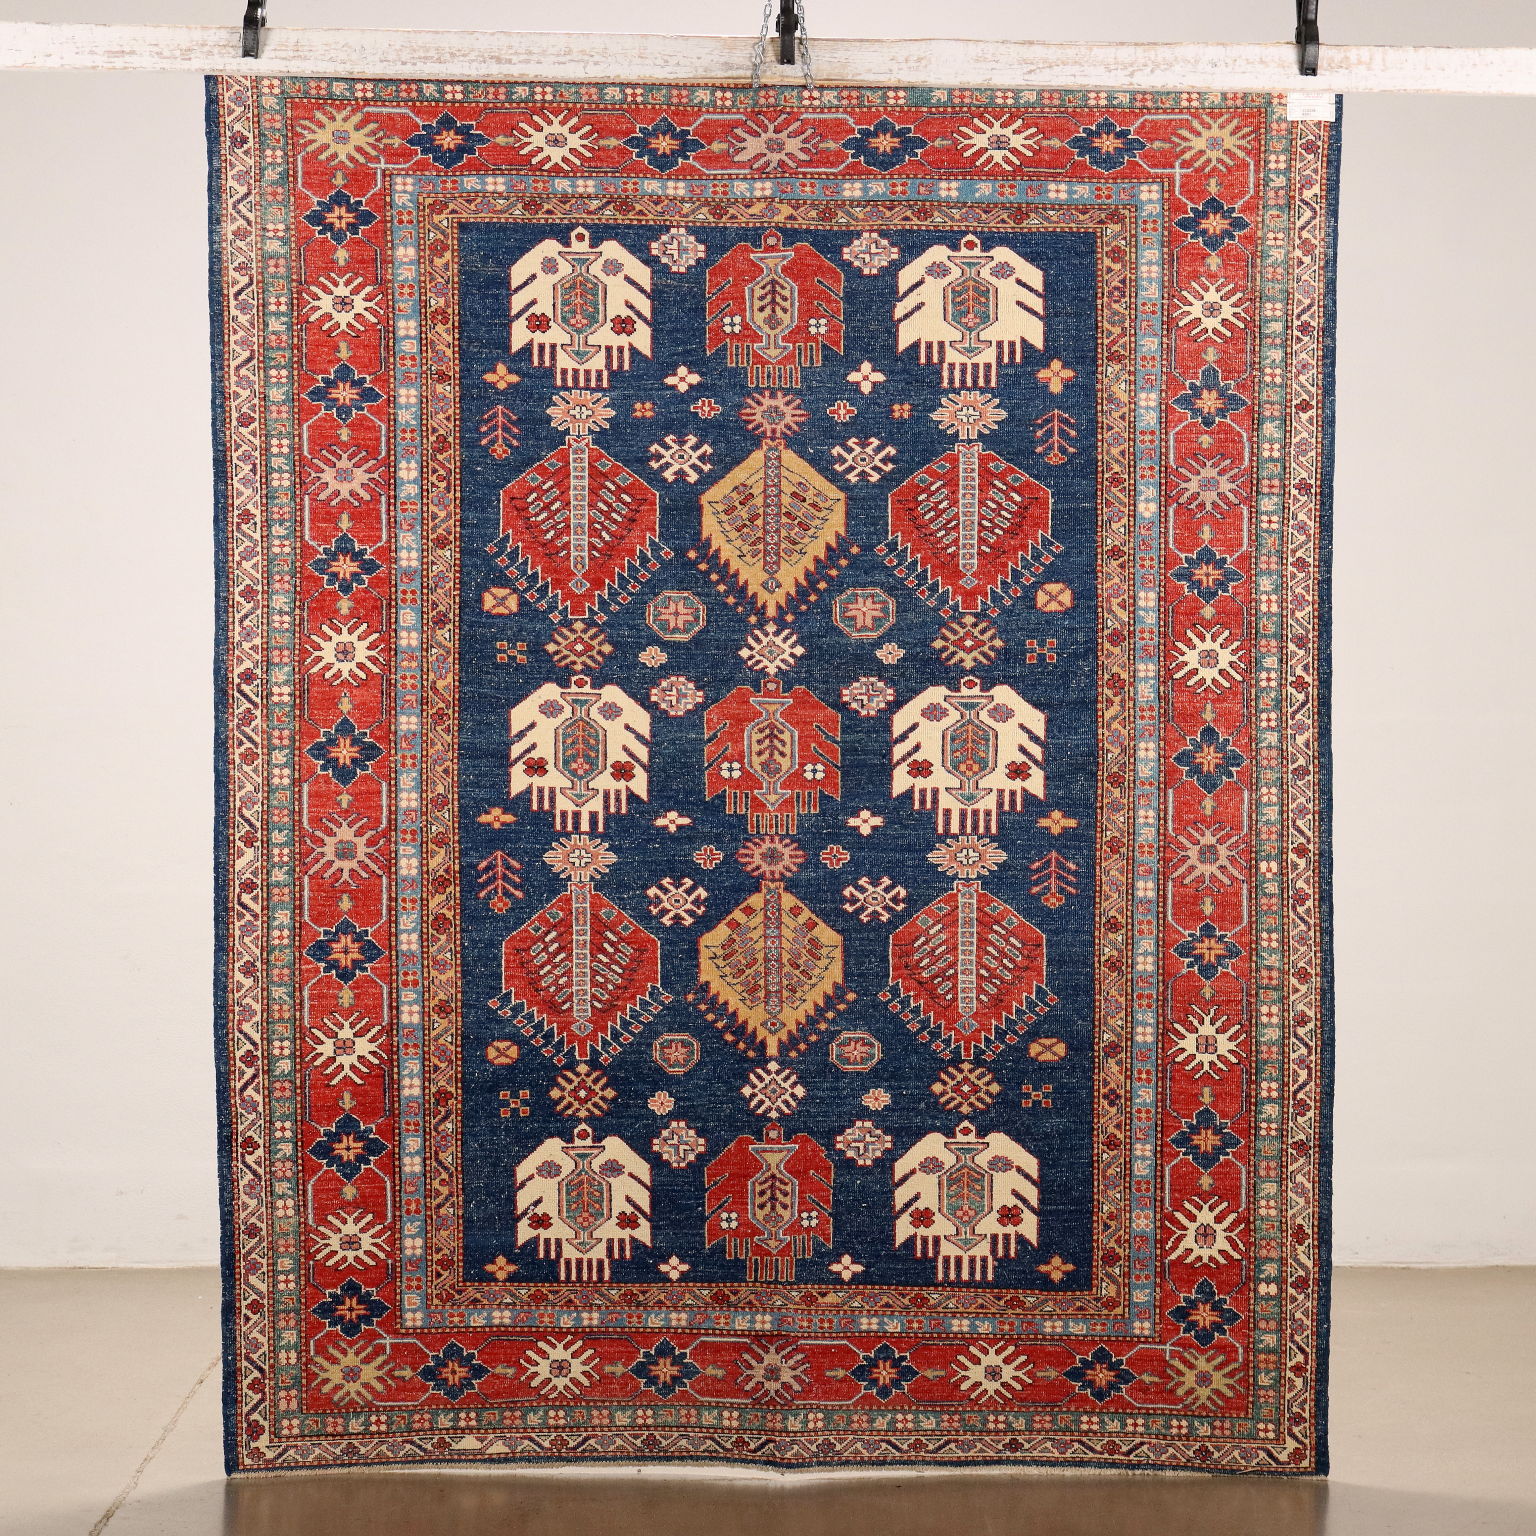 Tapis Gasny Ancien Coton Laine Noeud Fin Pakistan 233 x 185 cm